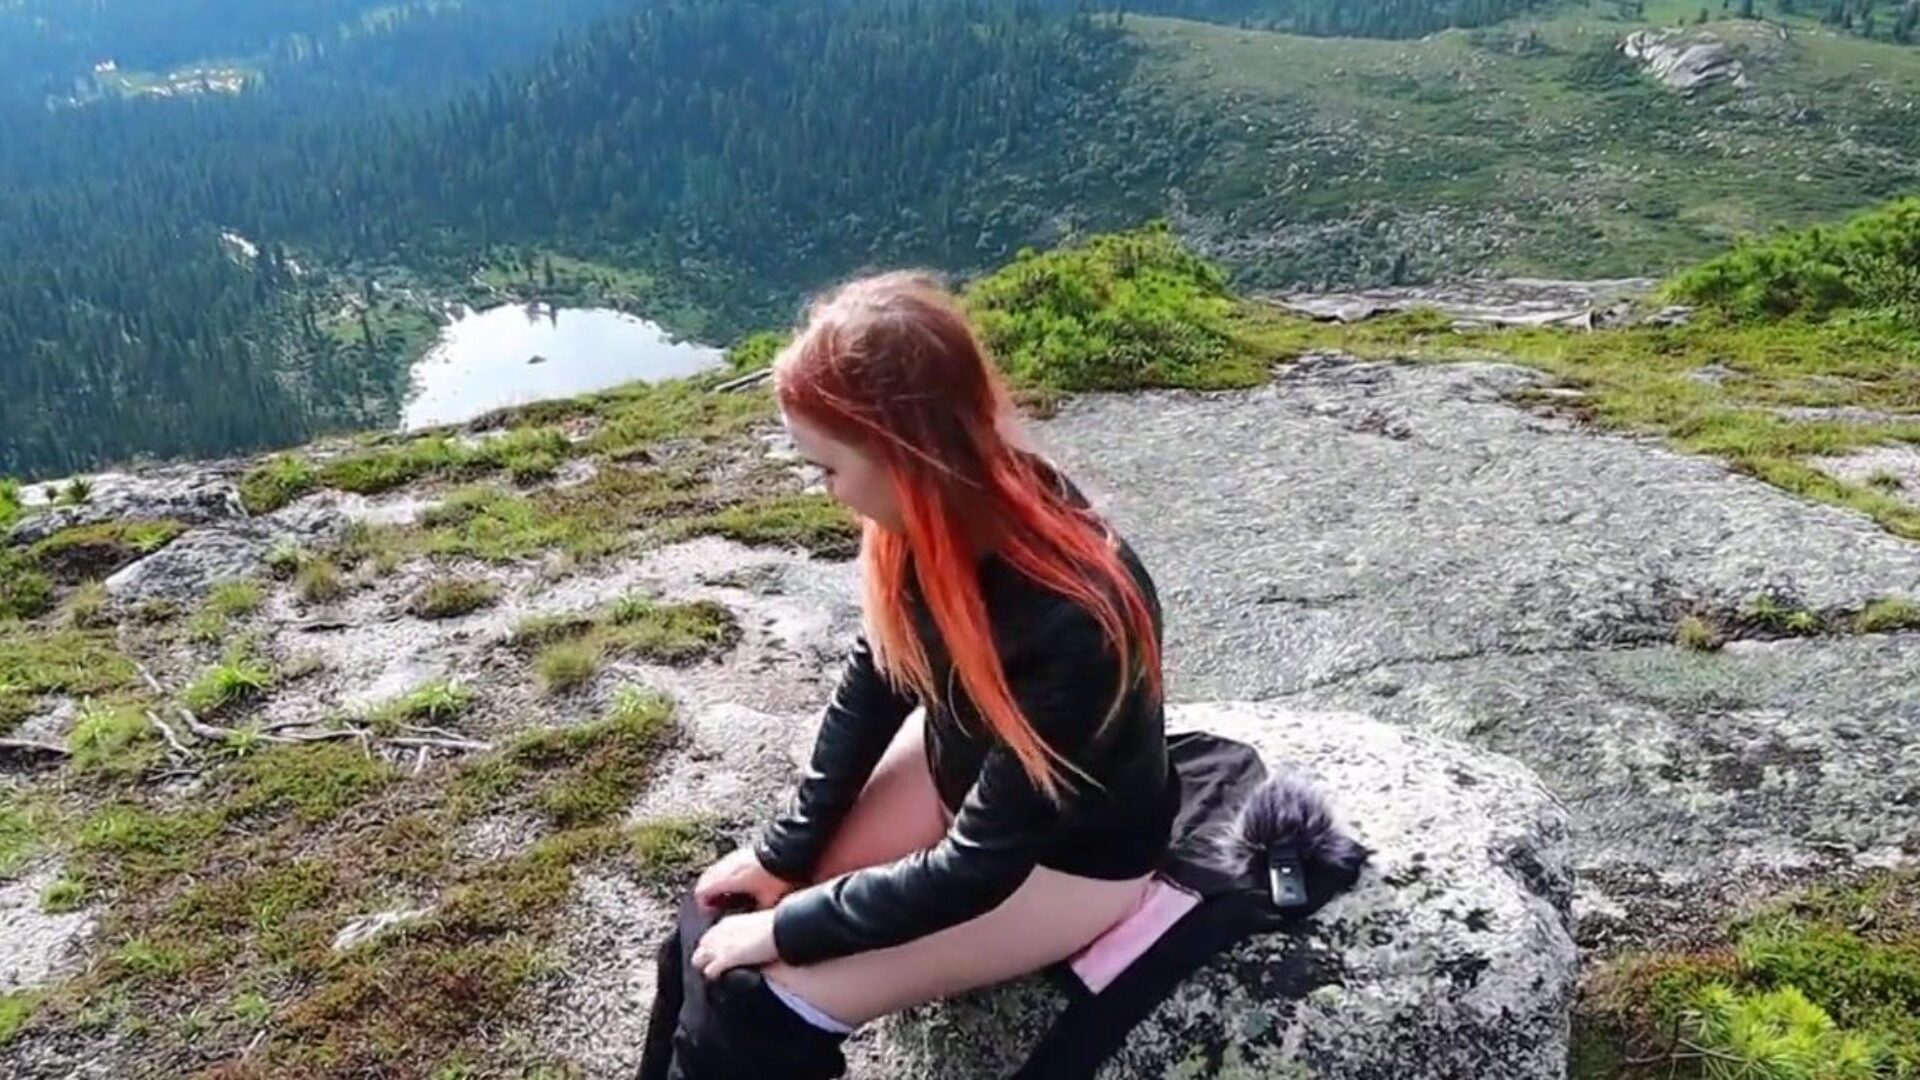 dívka se rozhodla uvolnit, masturbovat kundičku a dosáhnout orgasmu vysoko v horách!